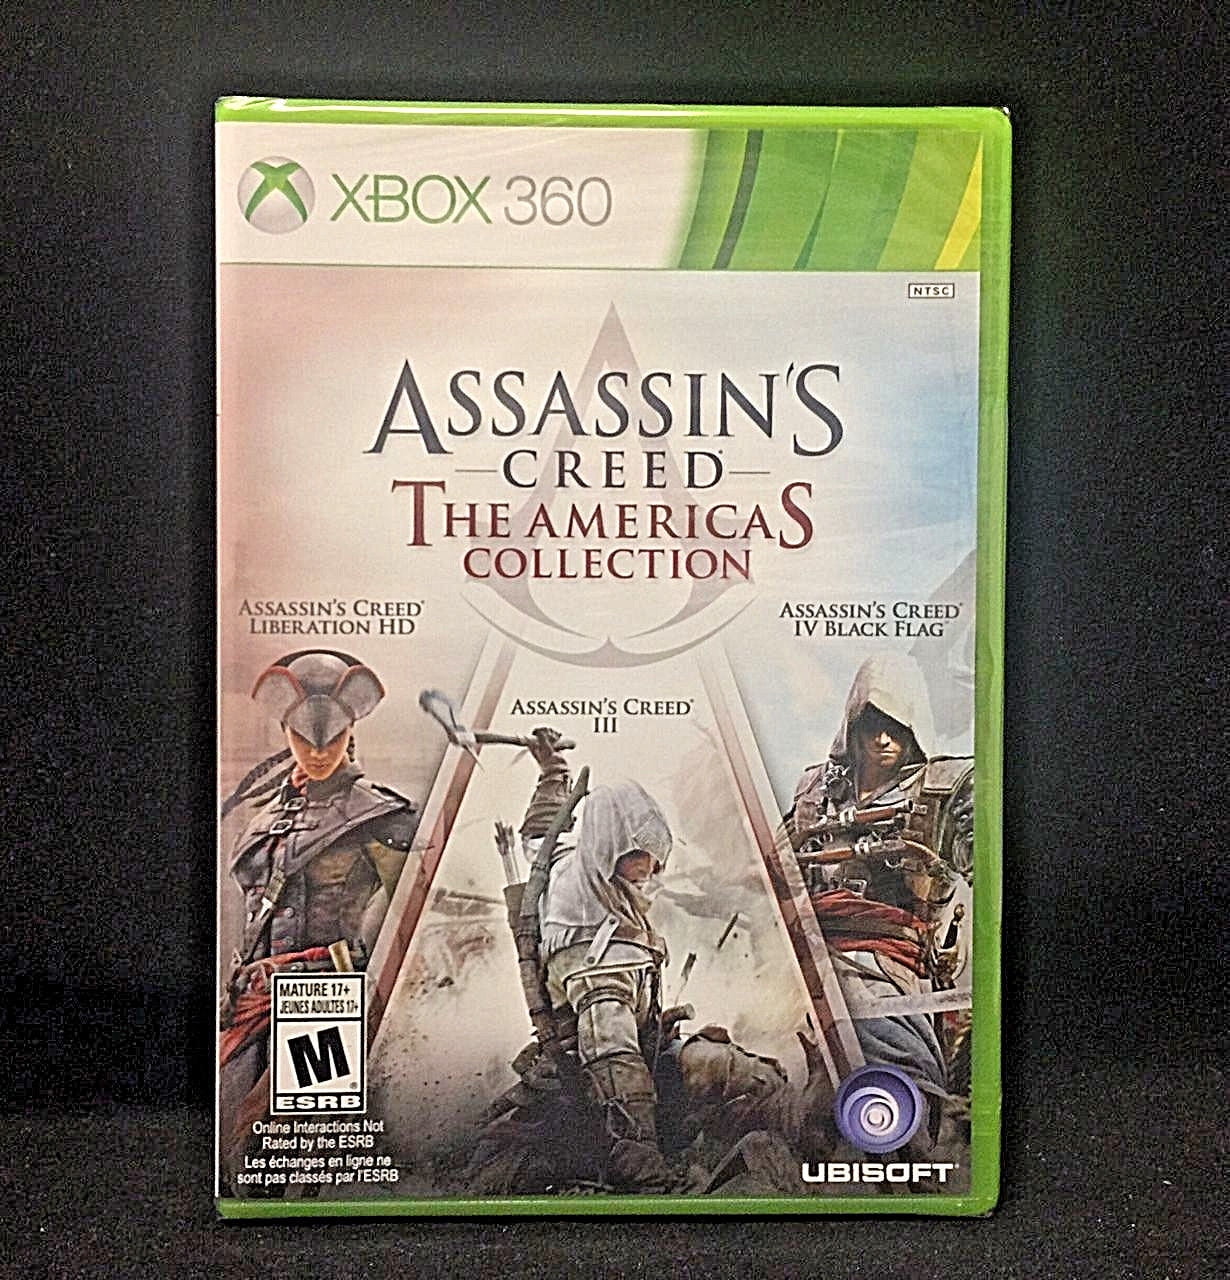 Platteland Verbieden Doe alles met mijn kracht Assassin's Creed: The Americas Collection Xbox 360 - Walmart.com